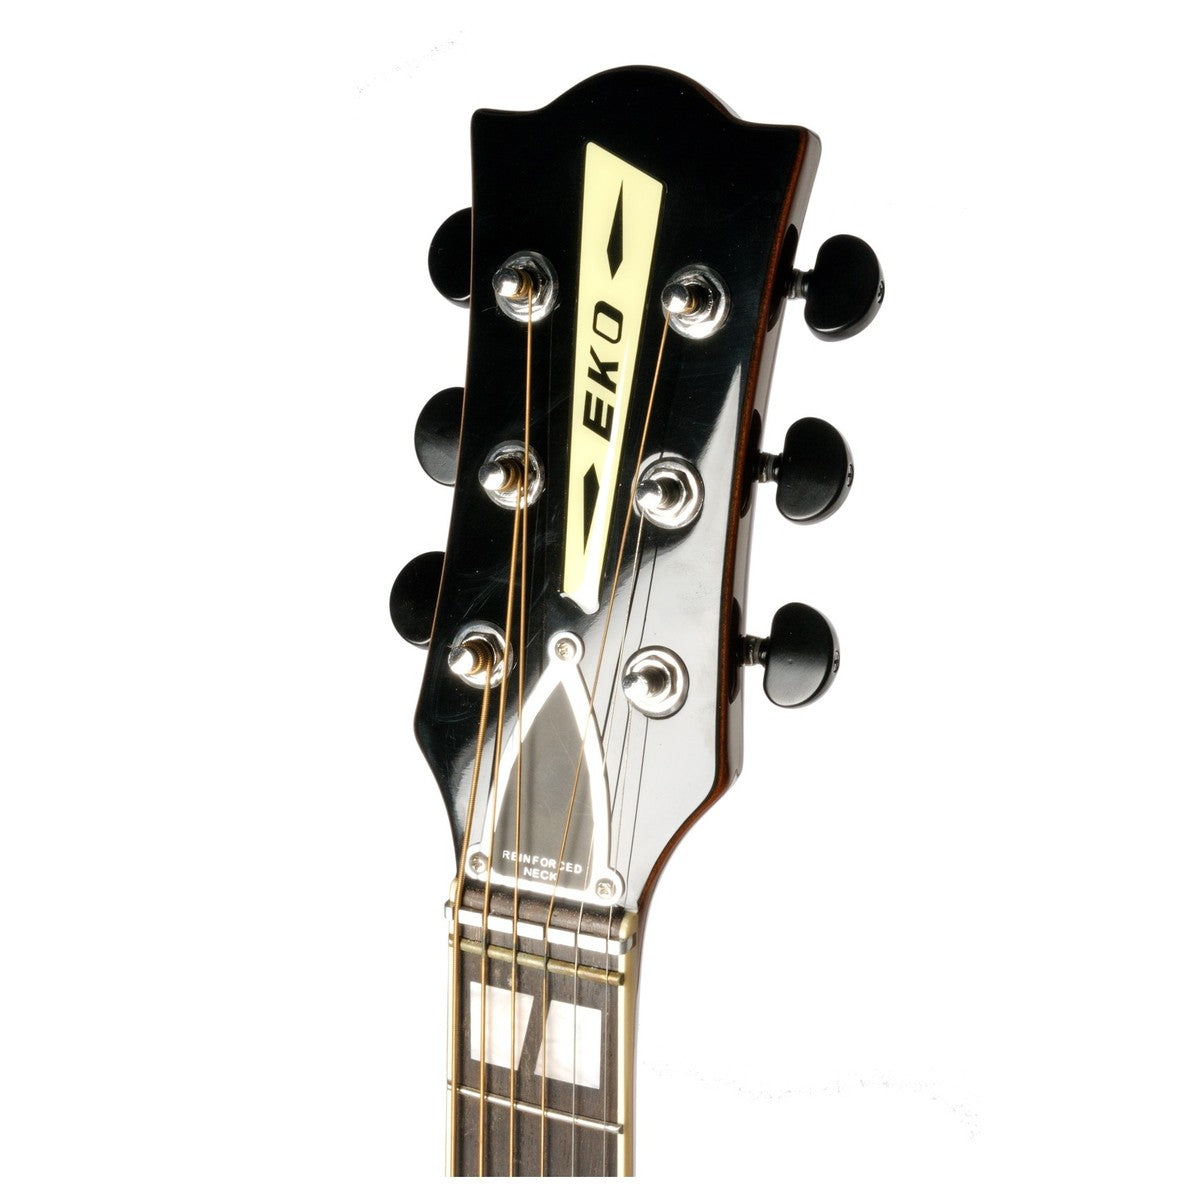 Eko Ranger 6 VR Acoustic Guitar in Honey Burst